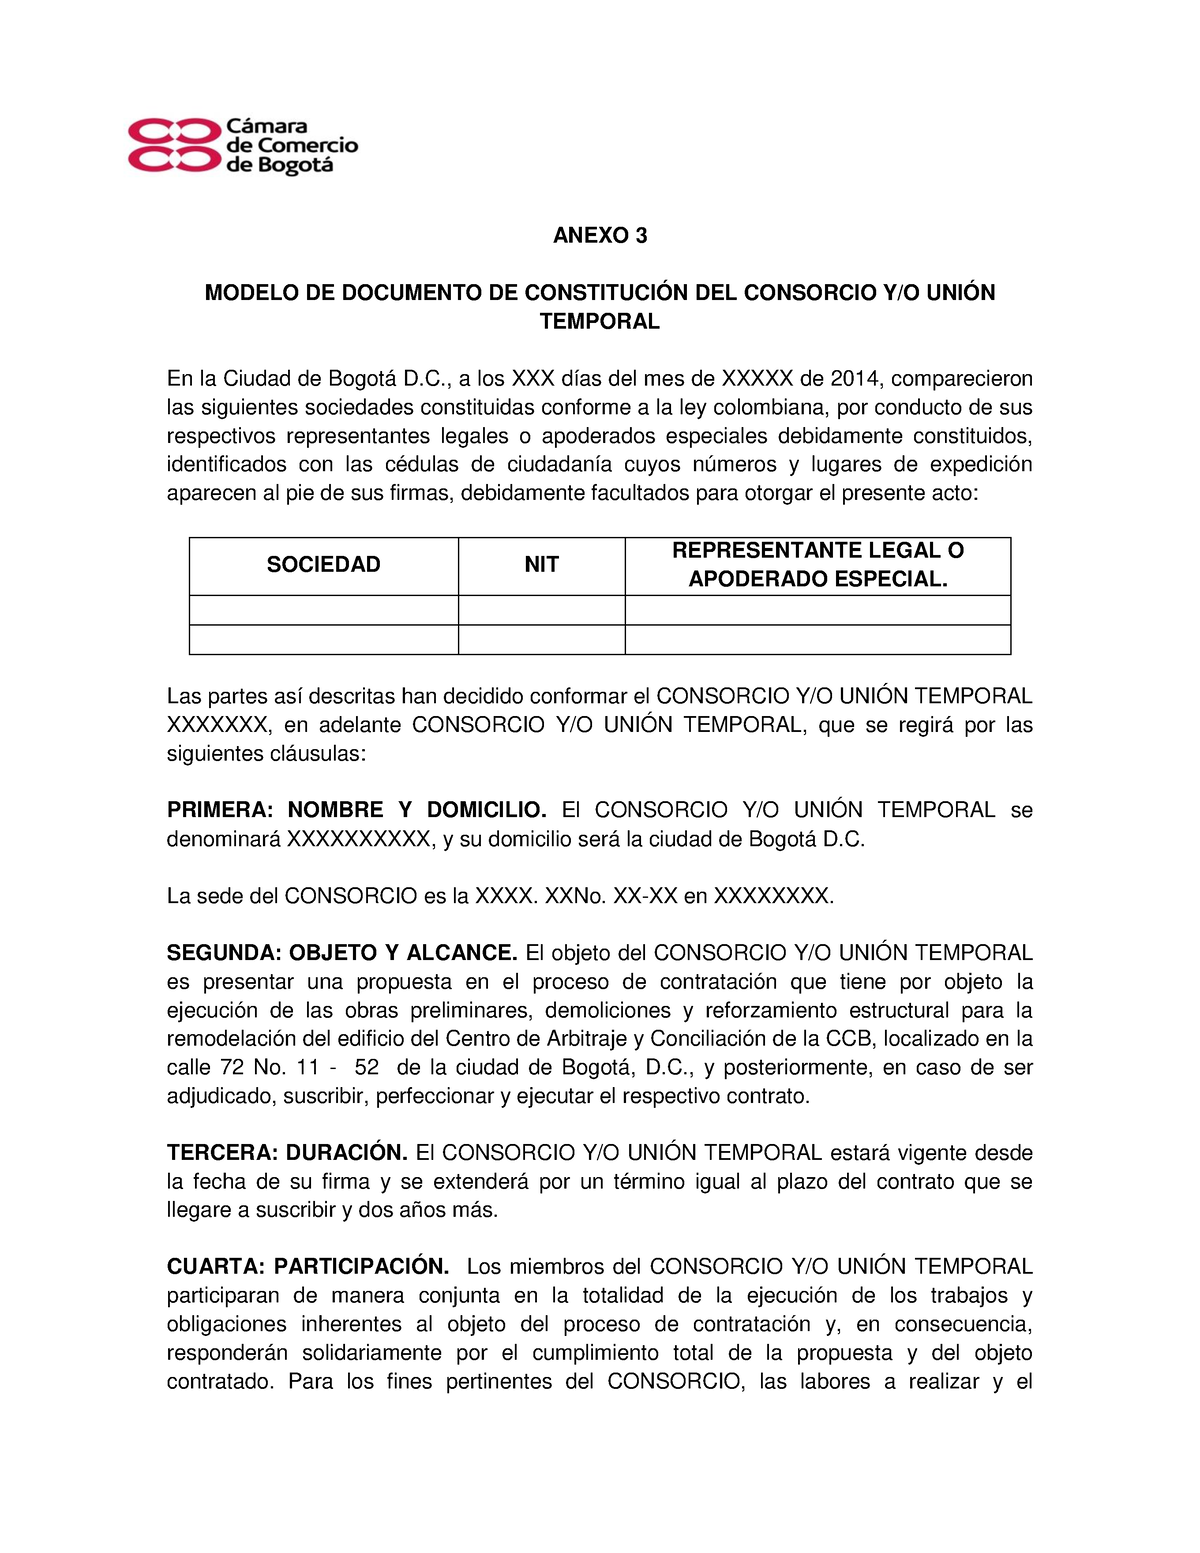 Consorcio O Unión Temporal Anexo 3 Modelo De Documento De ConstituciÓn Del Consorcio Yo UniÓn 3471